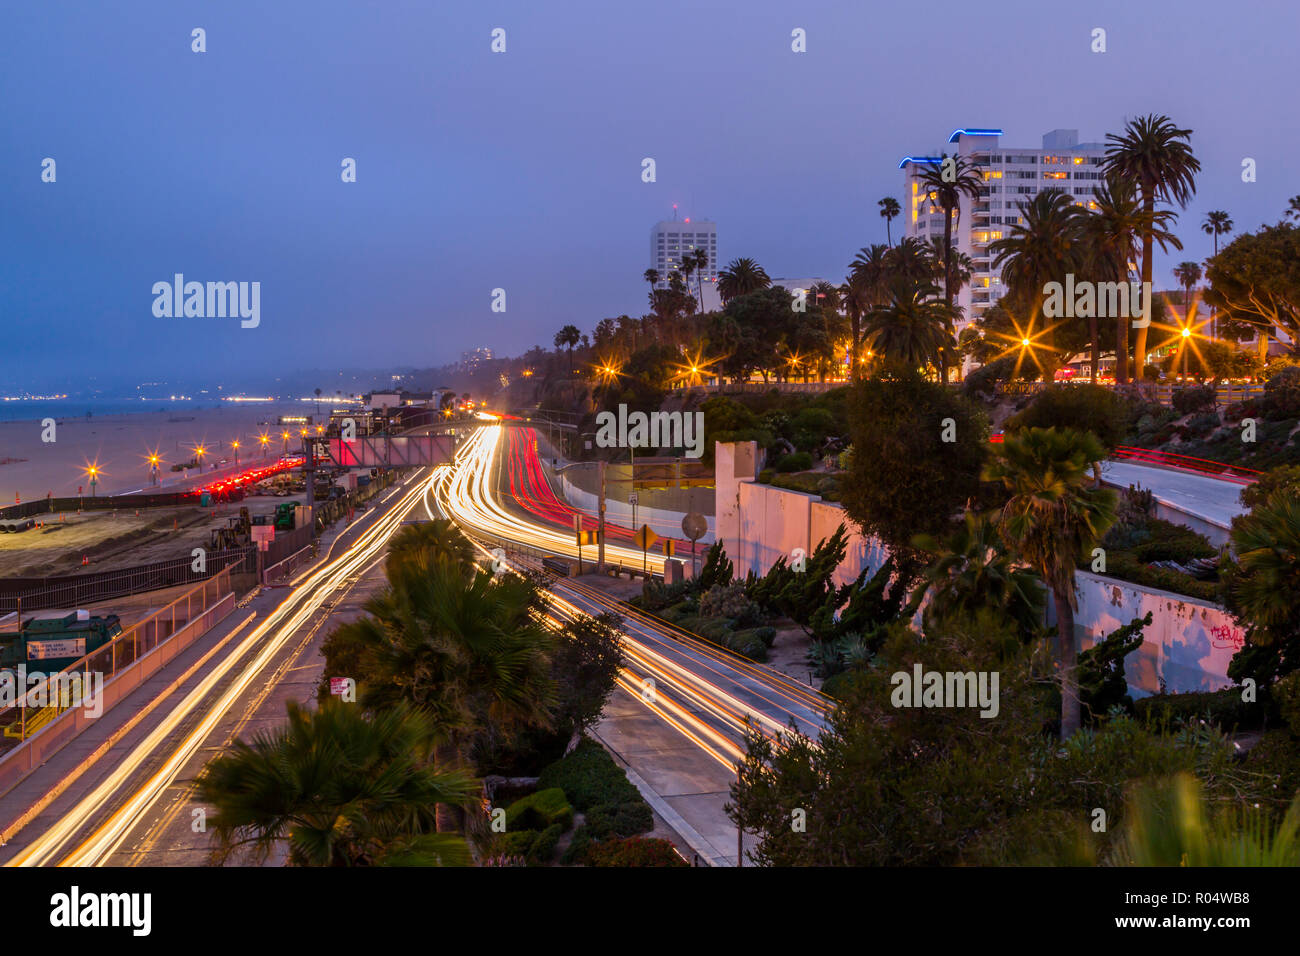 Vue de la route côtière du Pacifique au crépuscule, Santa Monica, Los Angeles, Californie, États-Unis d'Amérique, Amérique du Nord Banque D'Images